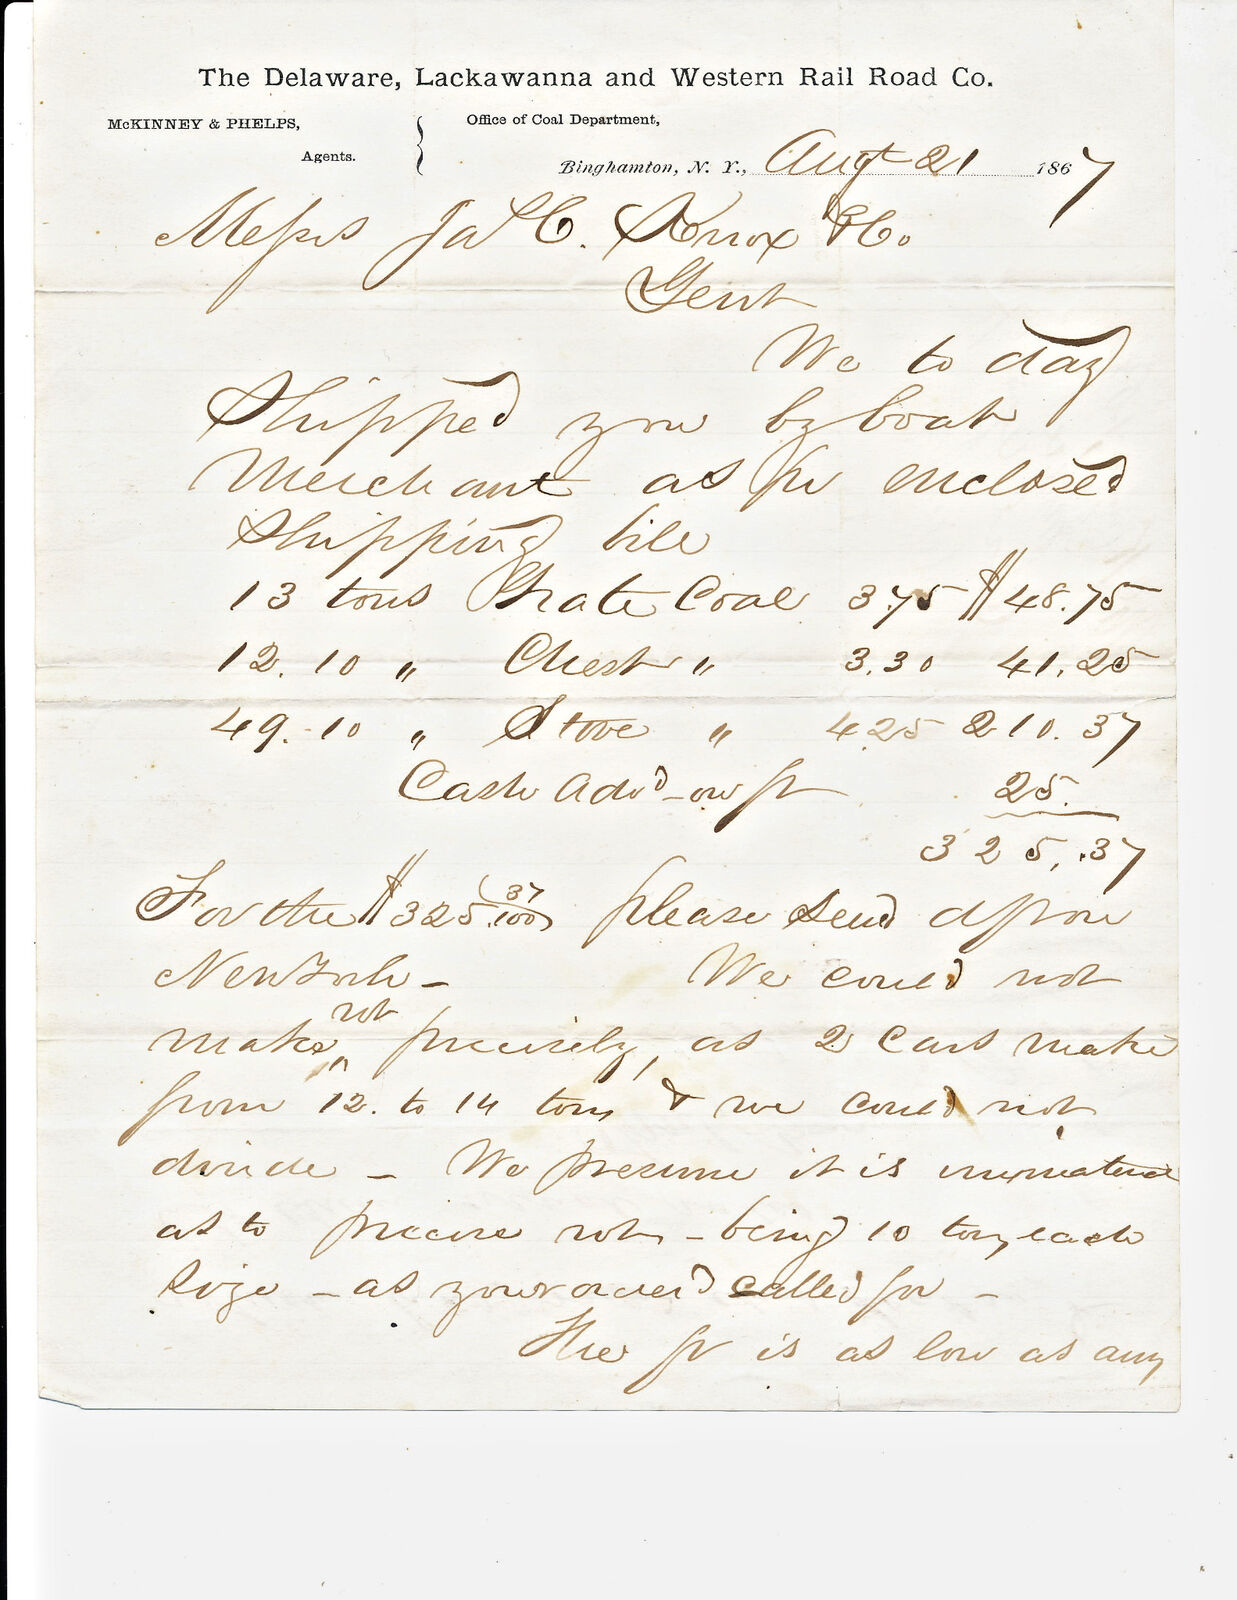 1867 BILL HEAD LETTERHEAD DELAWARE LACKAWANNA & WESTERN RAIL ROAD CO - COAL DEPT